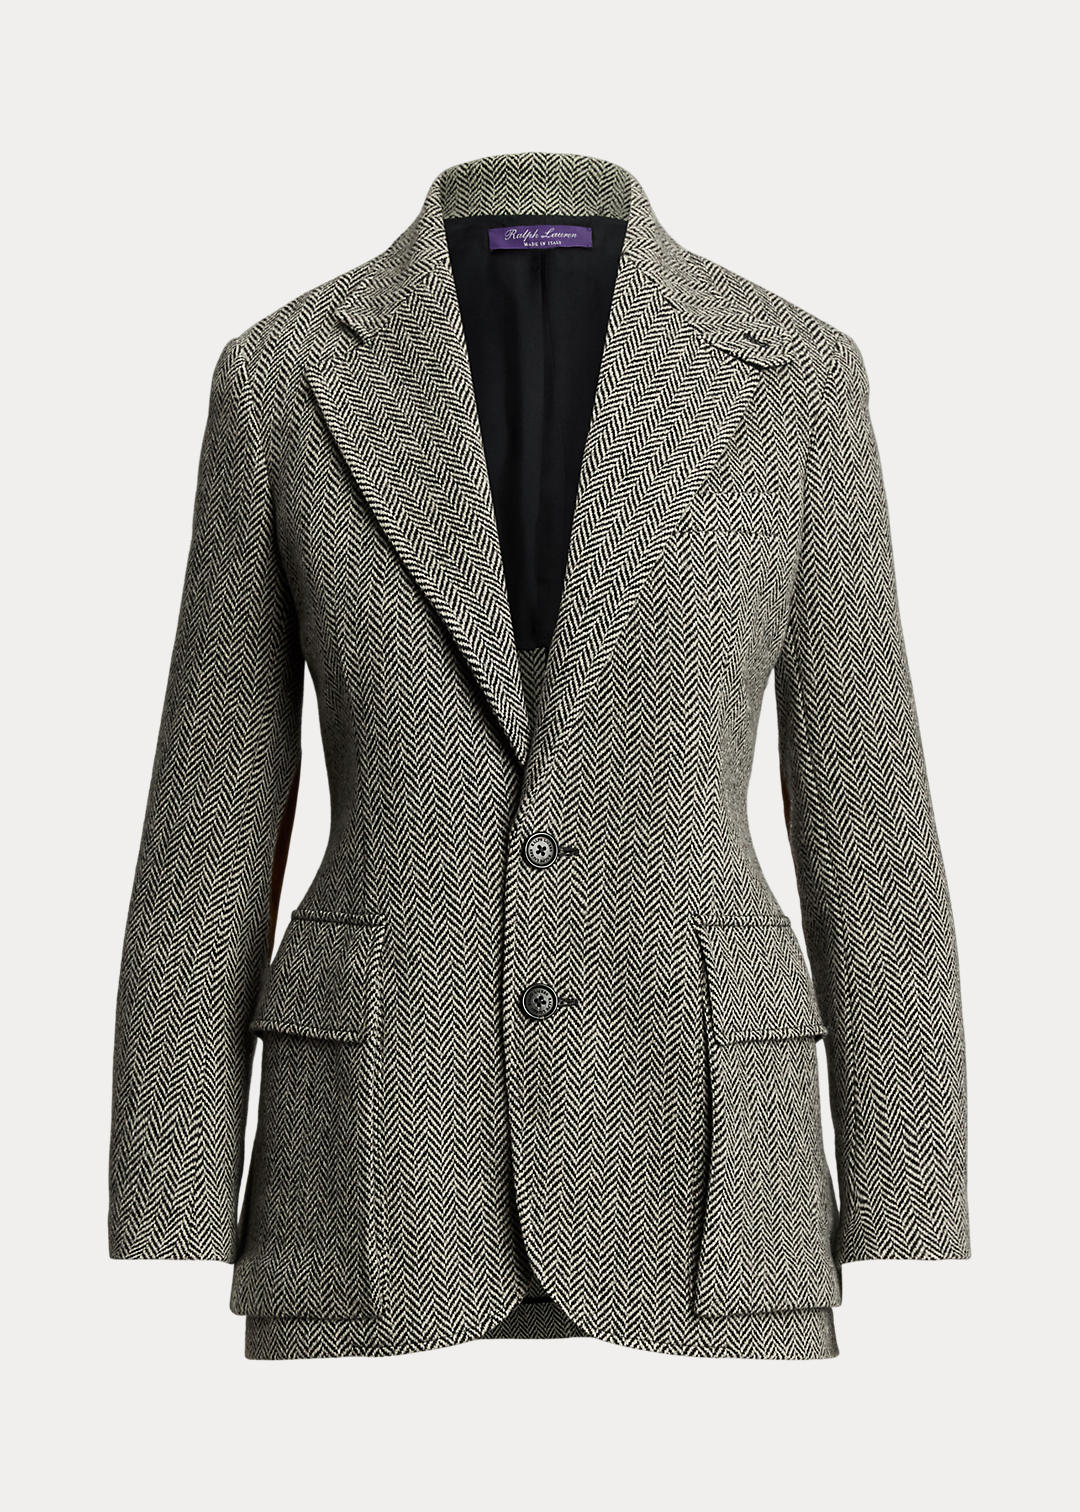 Ralph Lauren Collection The Tweed Jacket 2